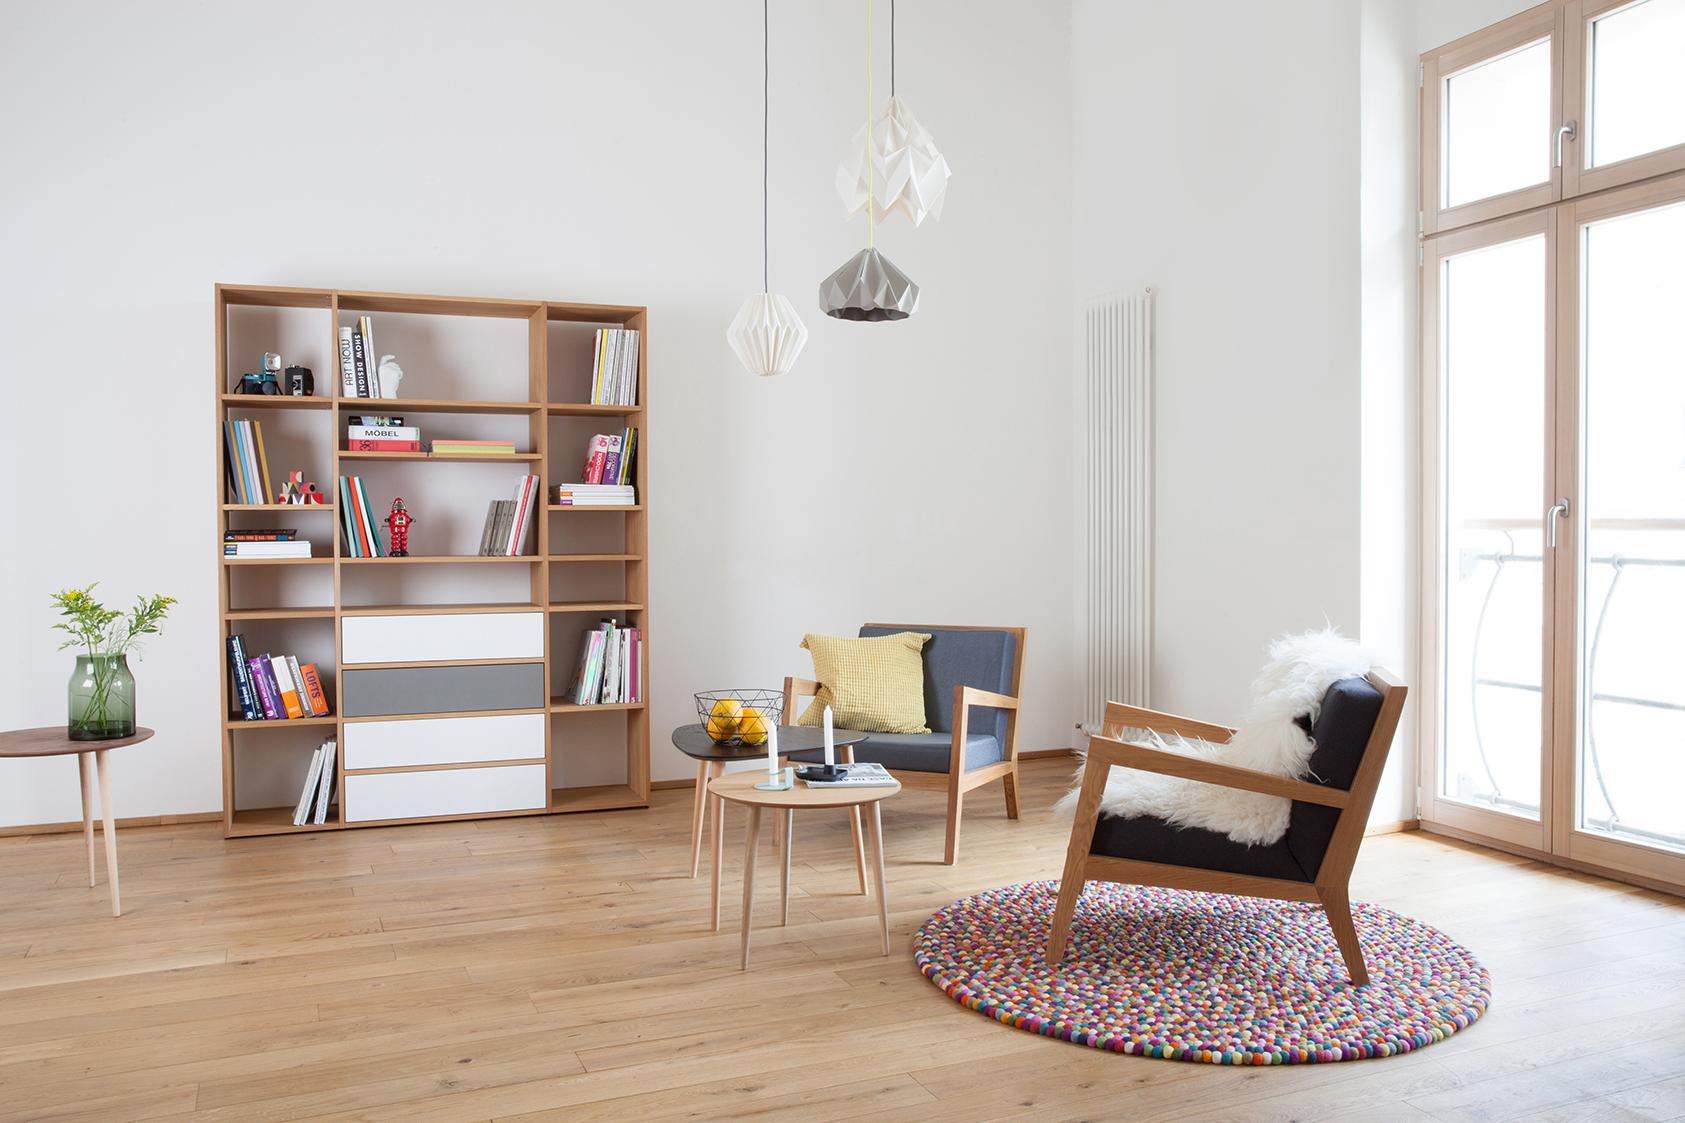 Wohnzimmer im skandinavischen Stil #couchtisch #beistelltisch #bücherregal #wohnzimmer #sessel #wohnzimmerregal #skandinavischesdesign ©mycs GmbH